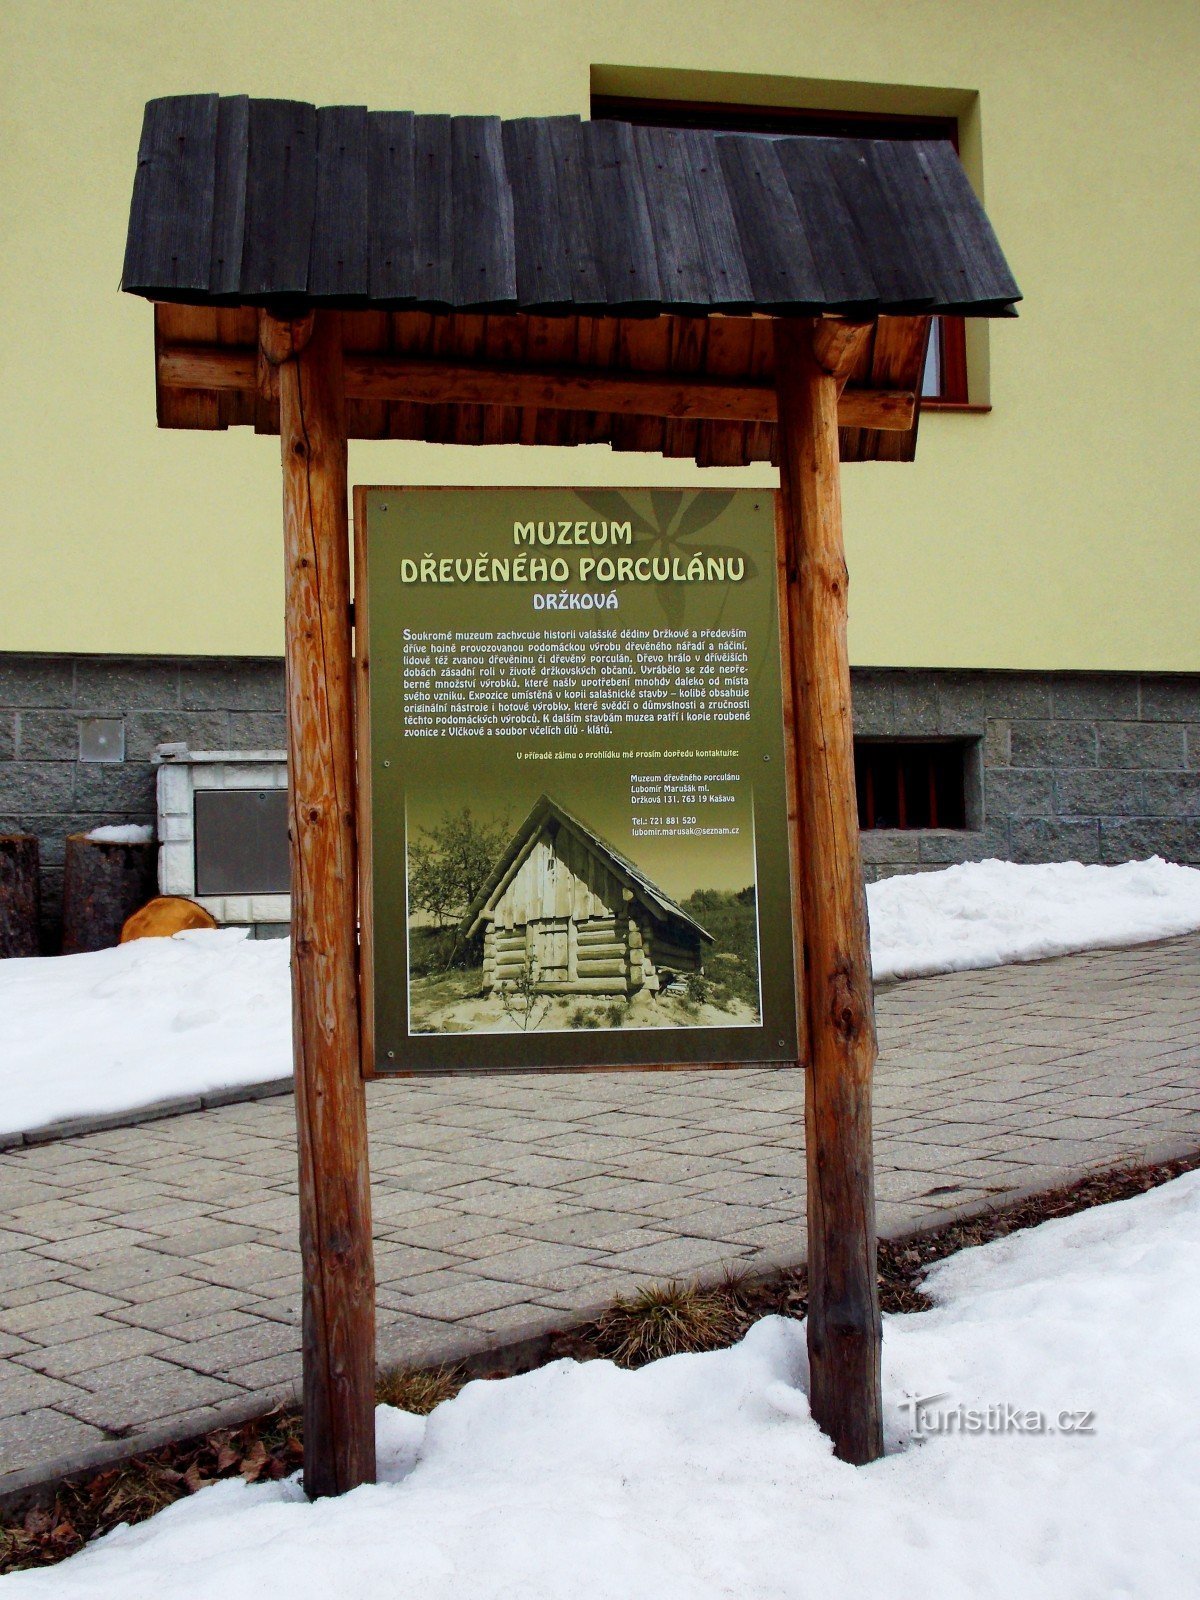 U muzej drvenog porculana u Držková kod Zlína